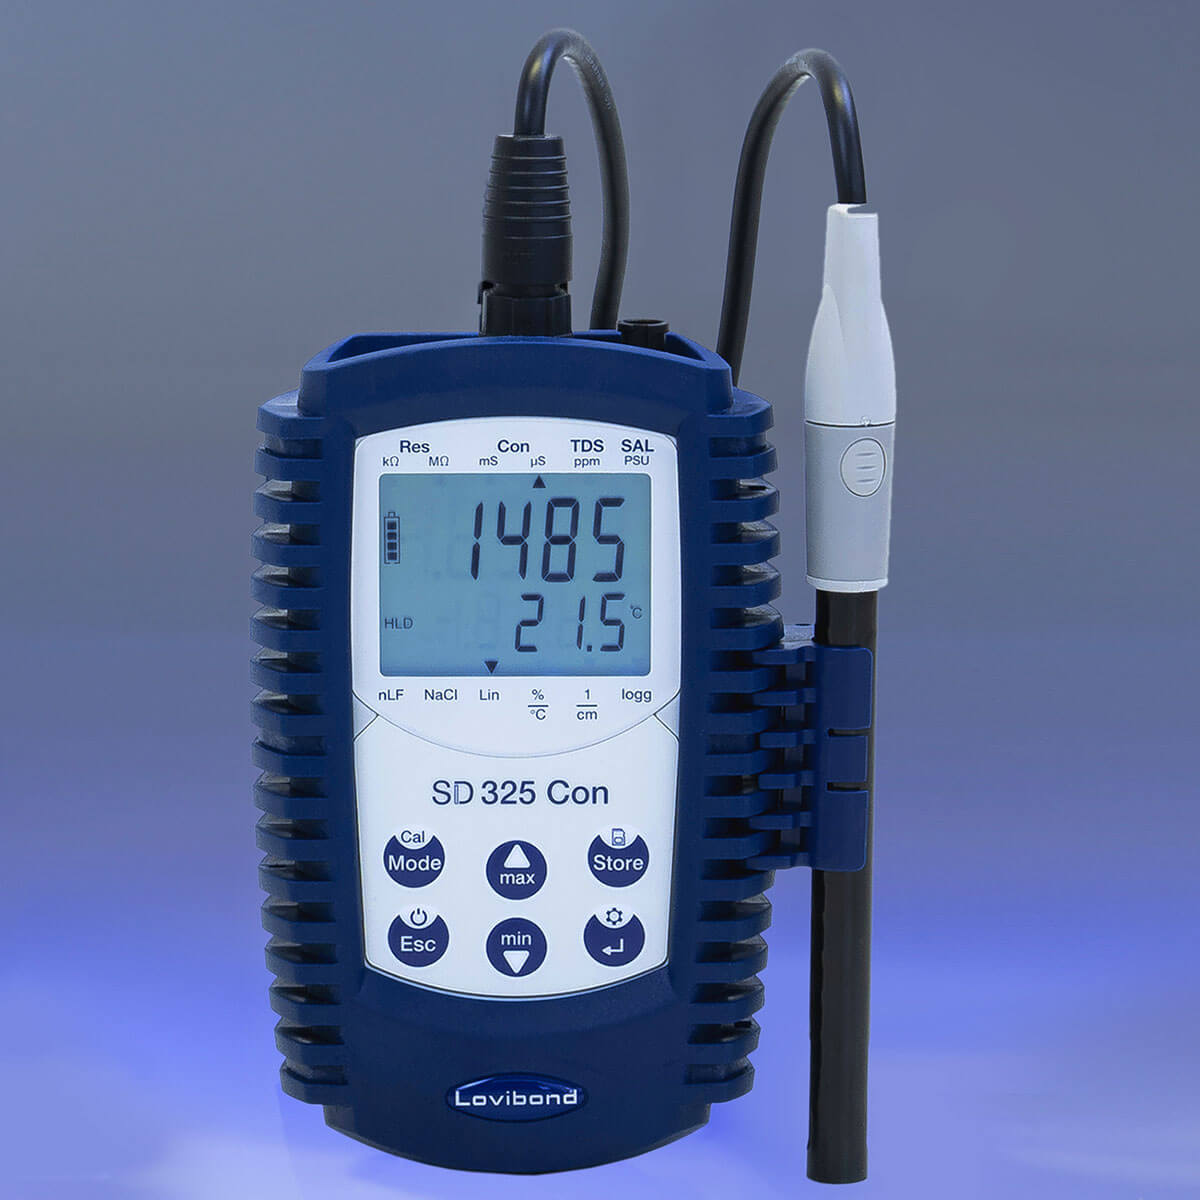 罗威邦 SD325 手持电导率测量仪 Con